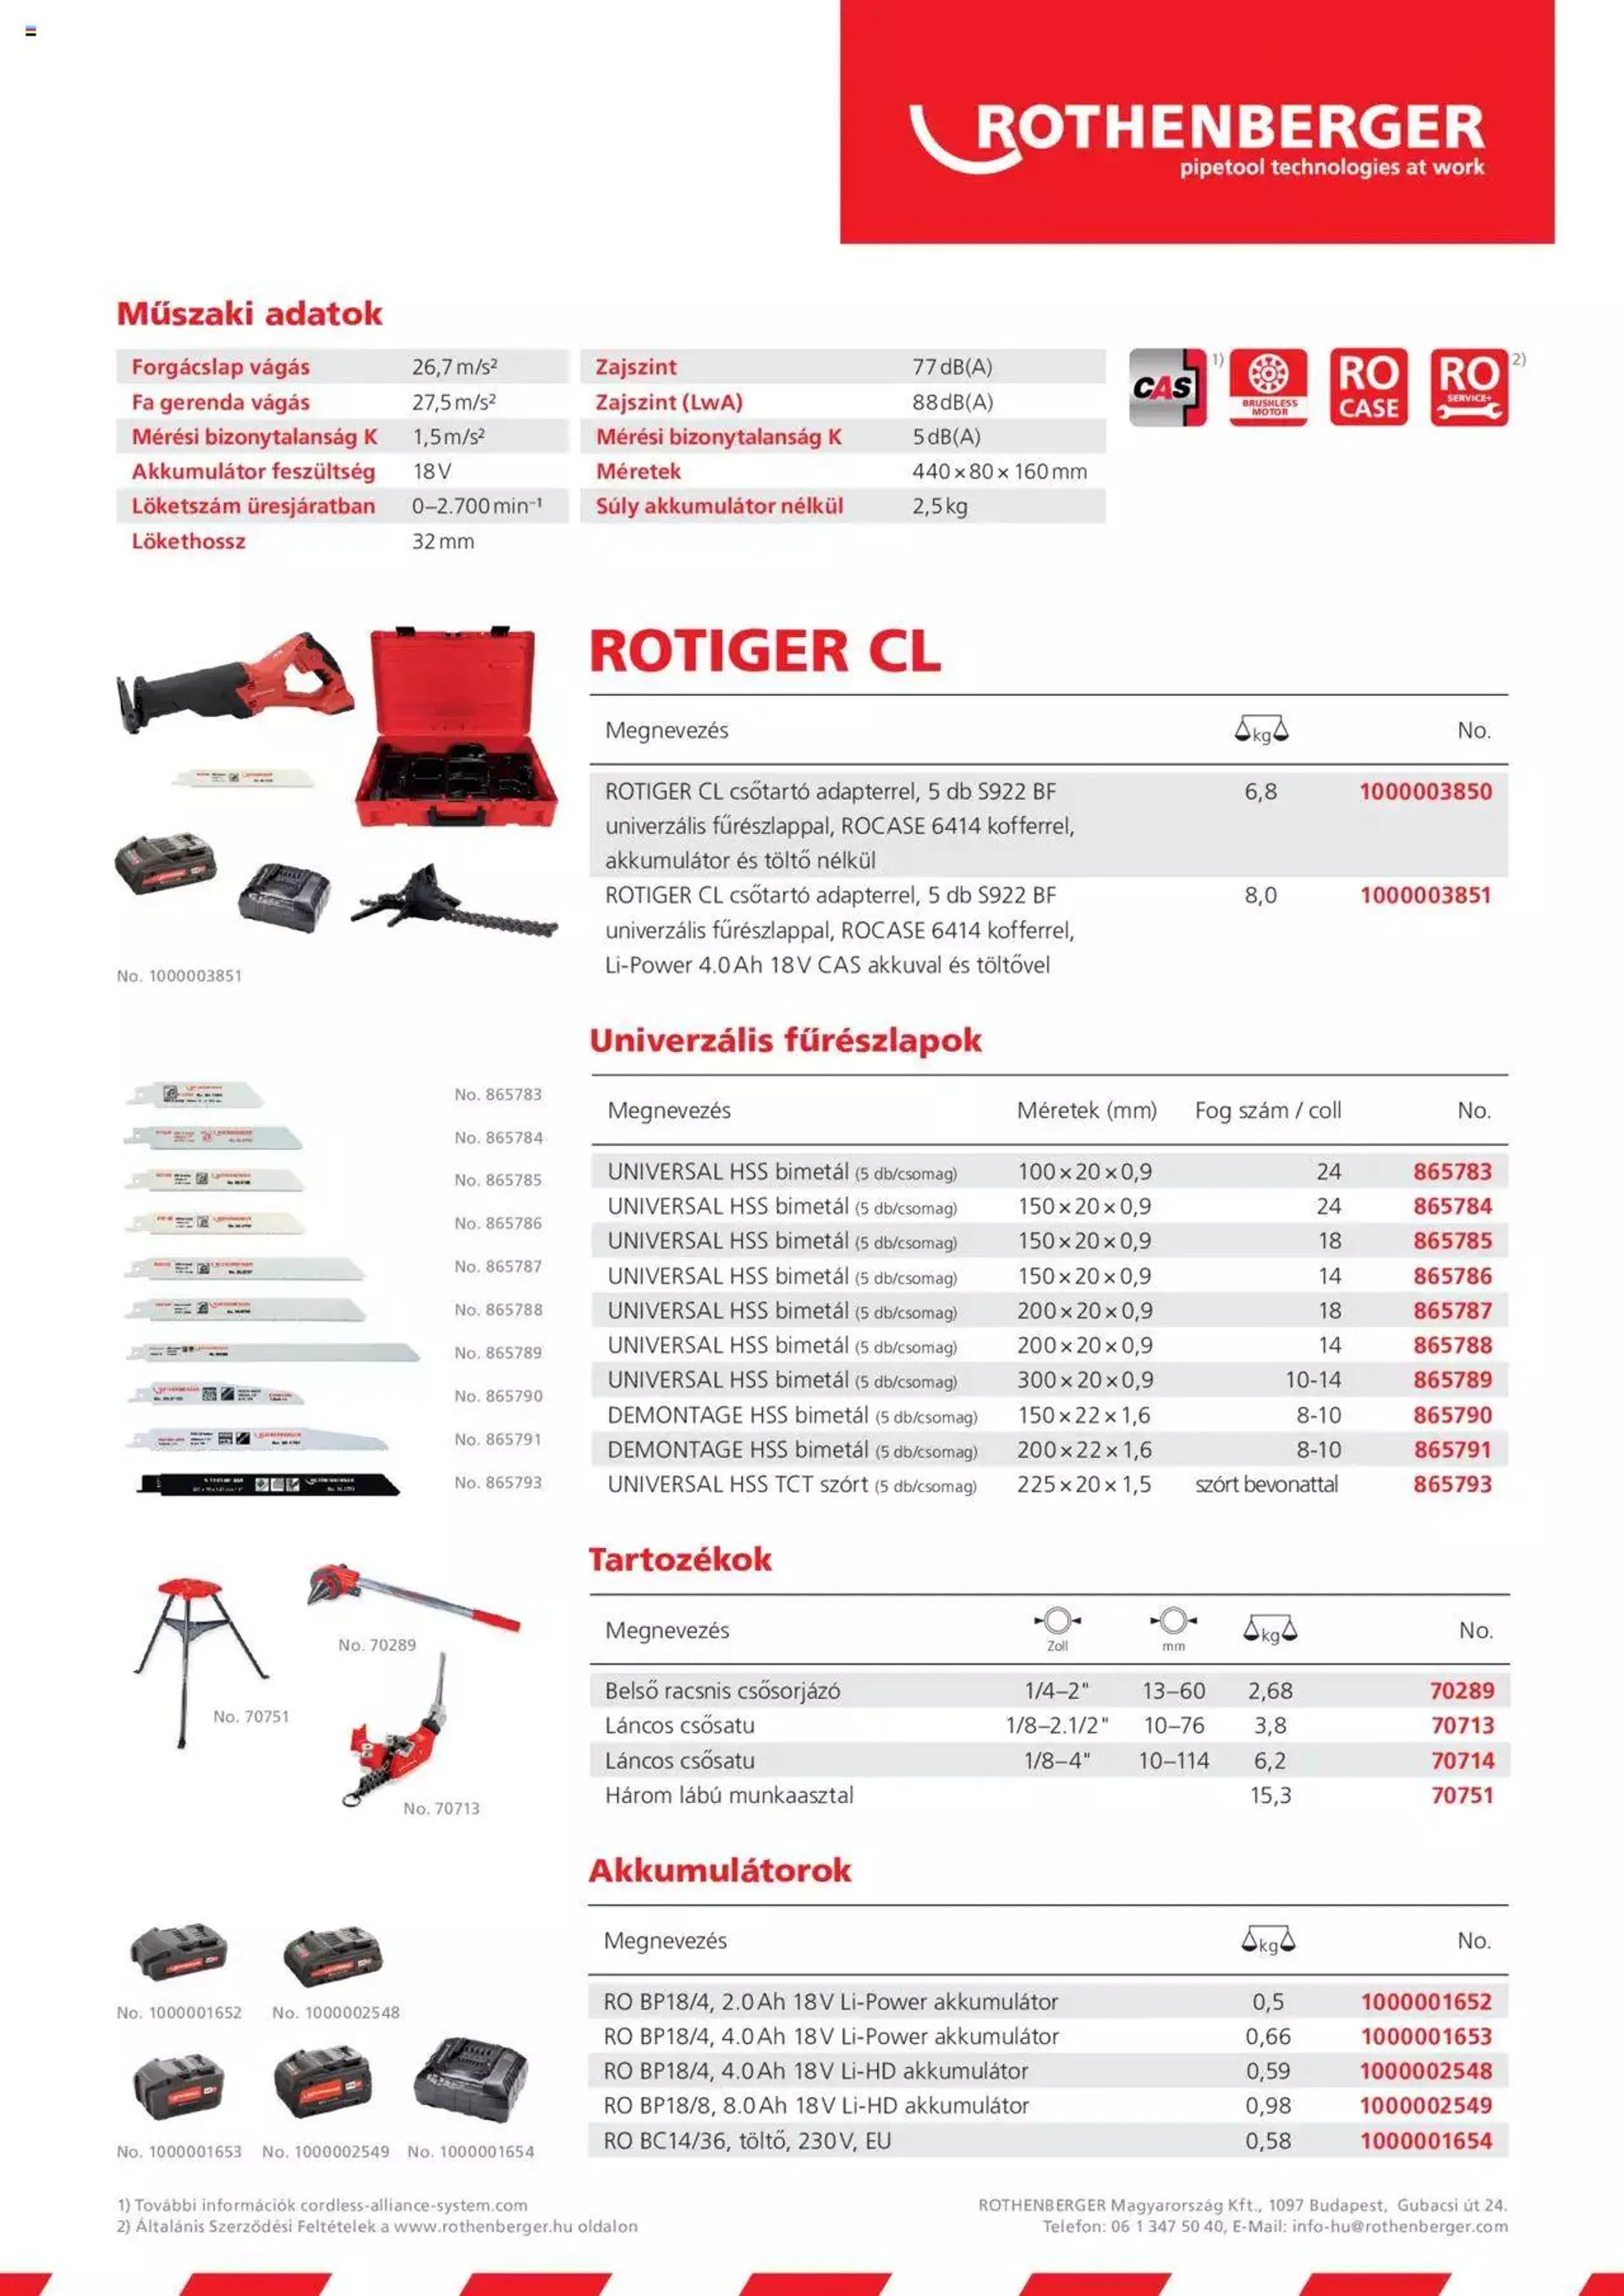 Rothenberger - ROTIGER CL akkumulátoros orrfűrész - 1